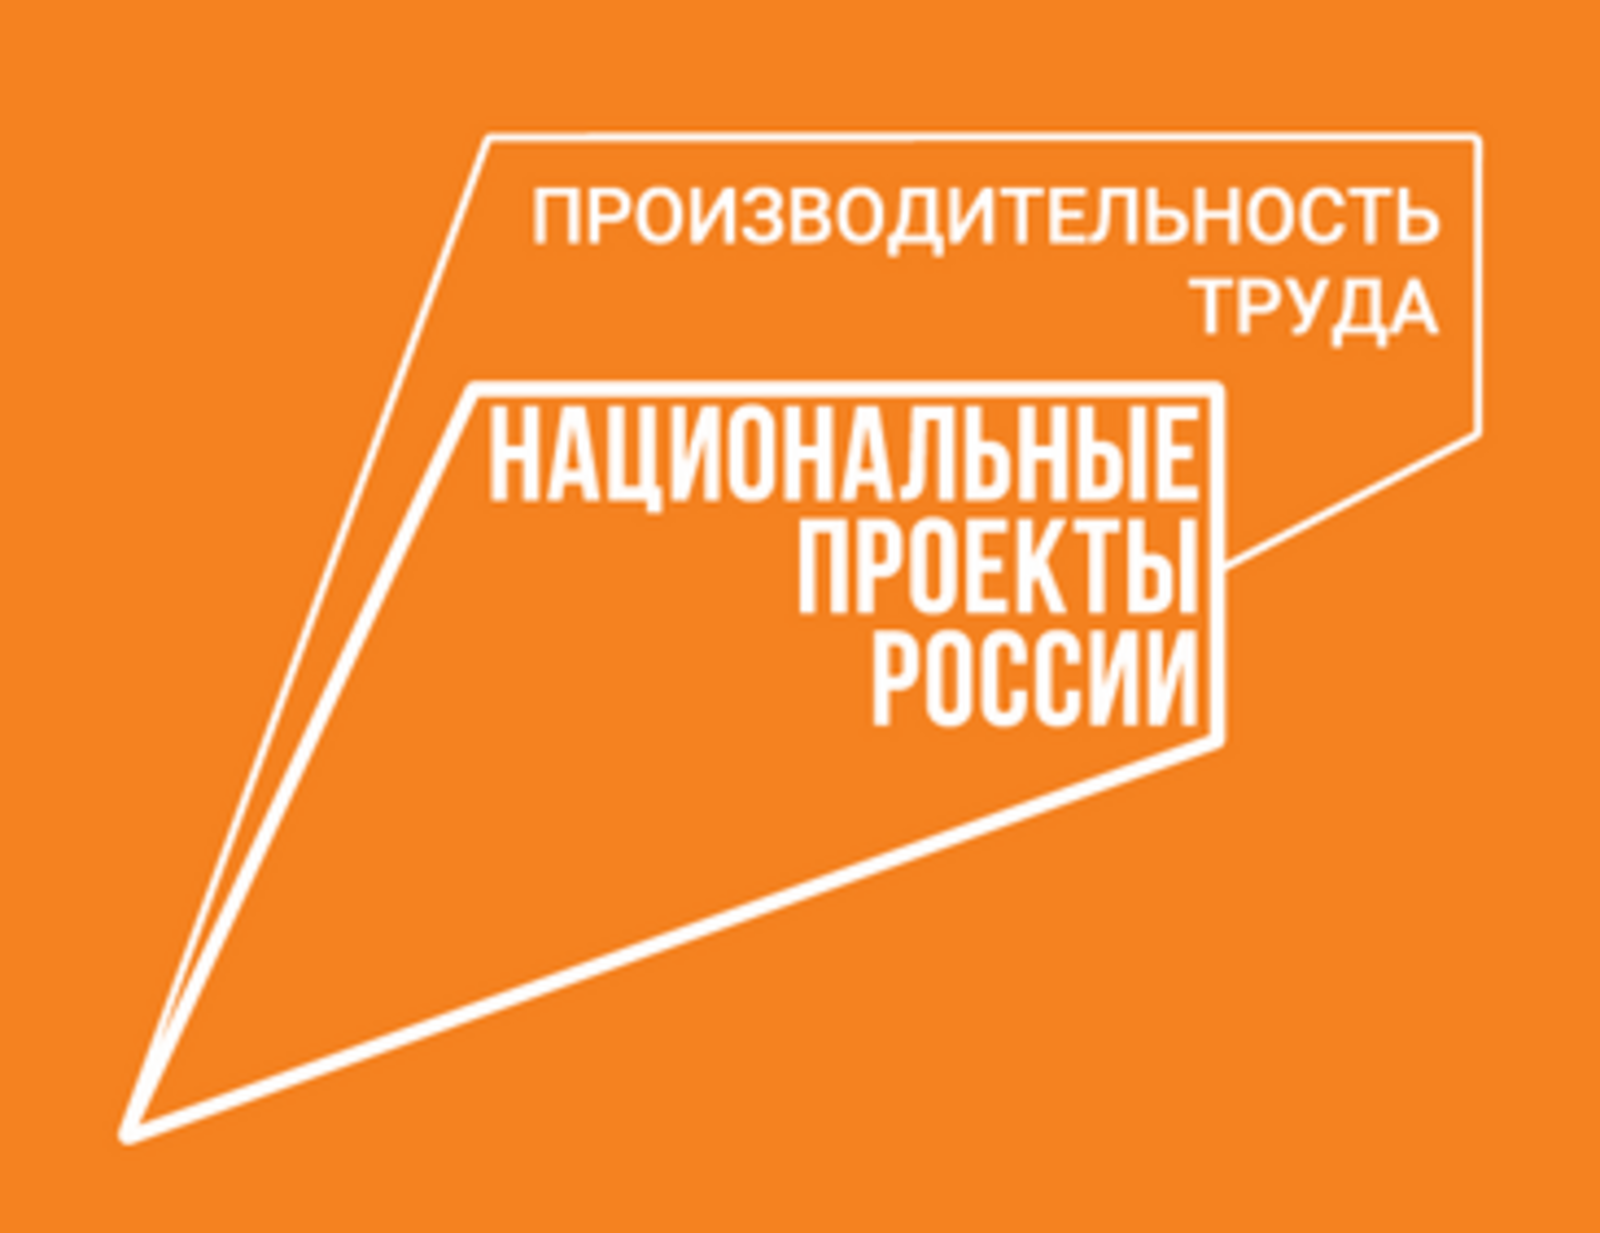 Власти Башкортостана рассказали о мерах господдержки в рамках нацпроекта «Производительность труда»